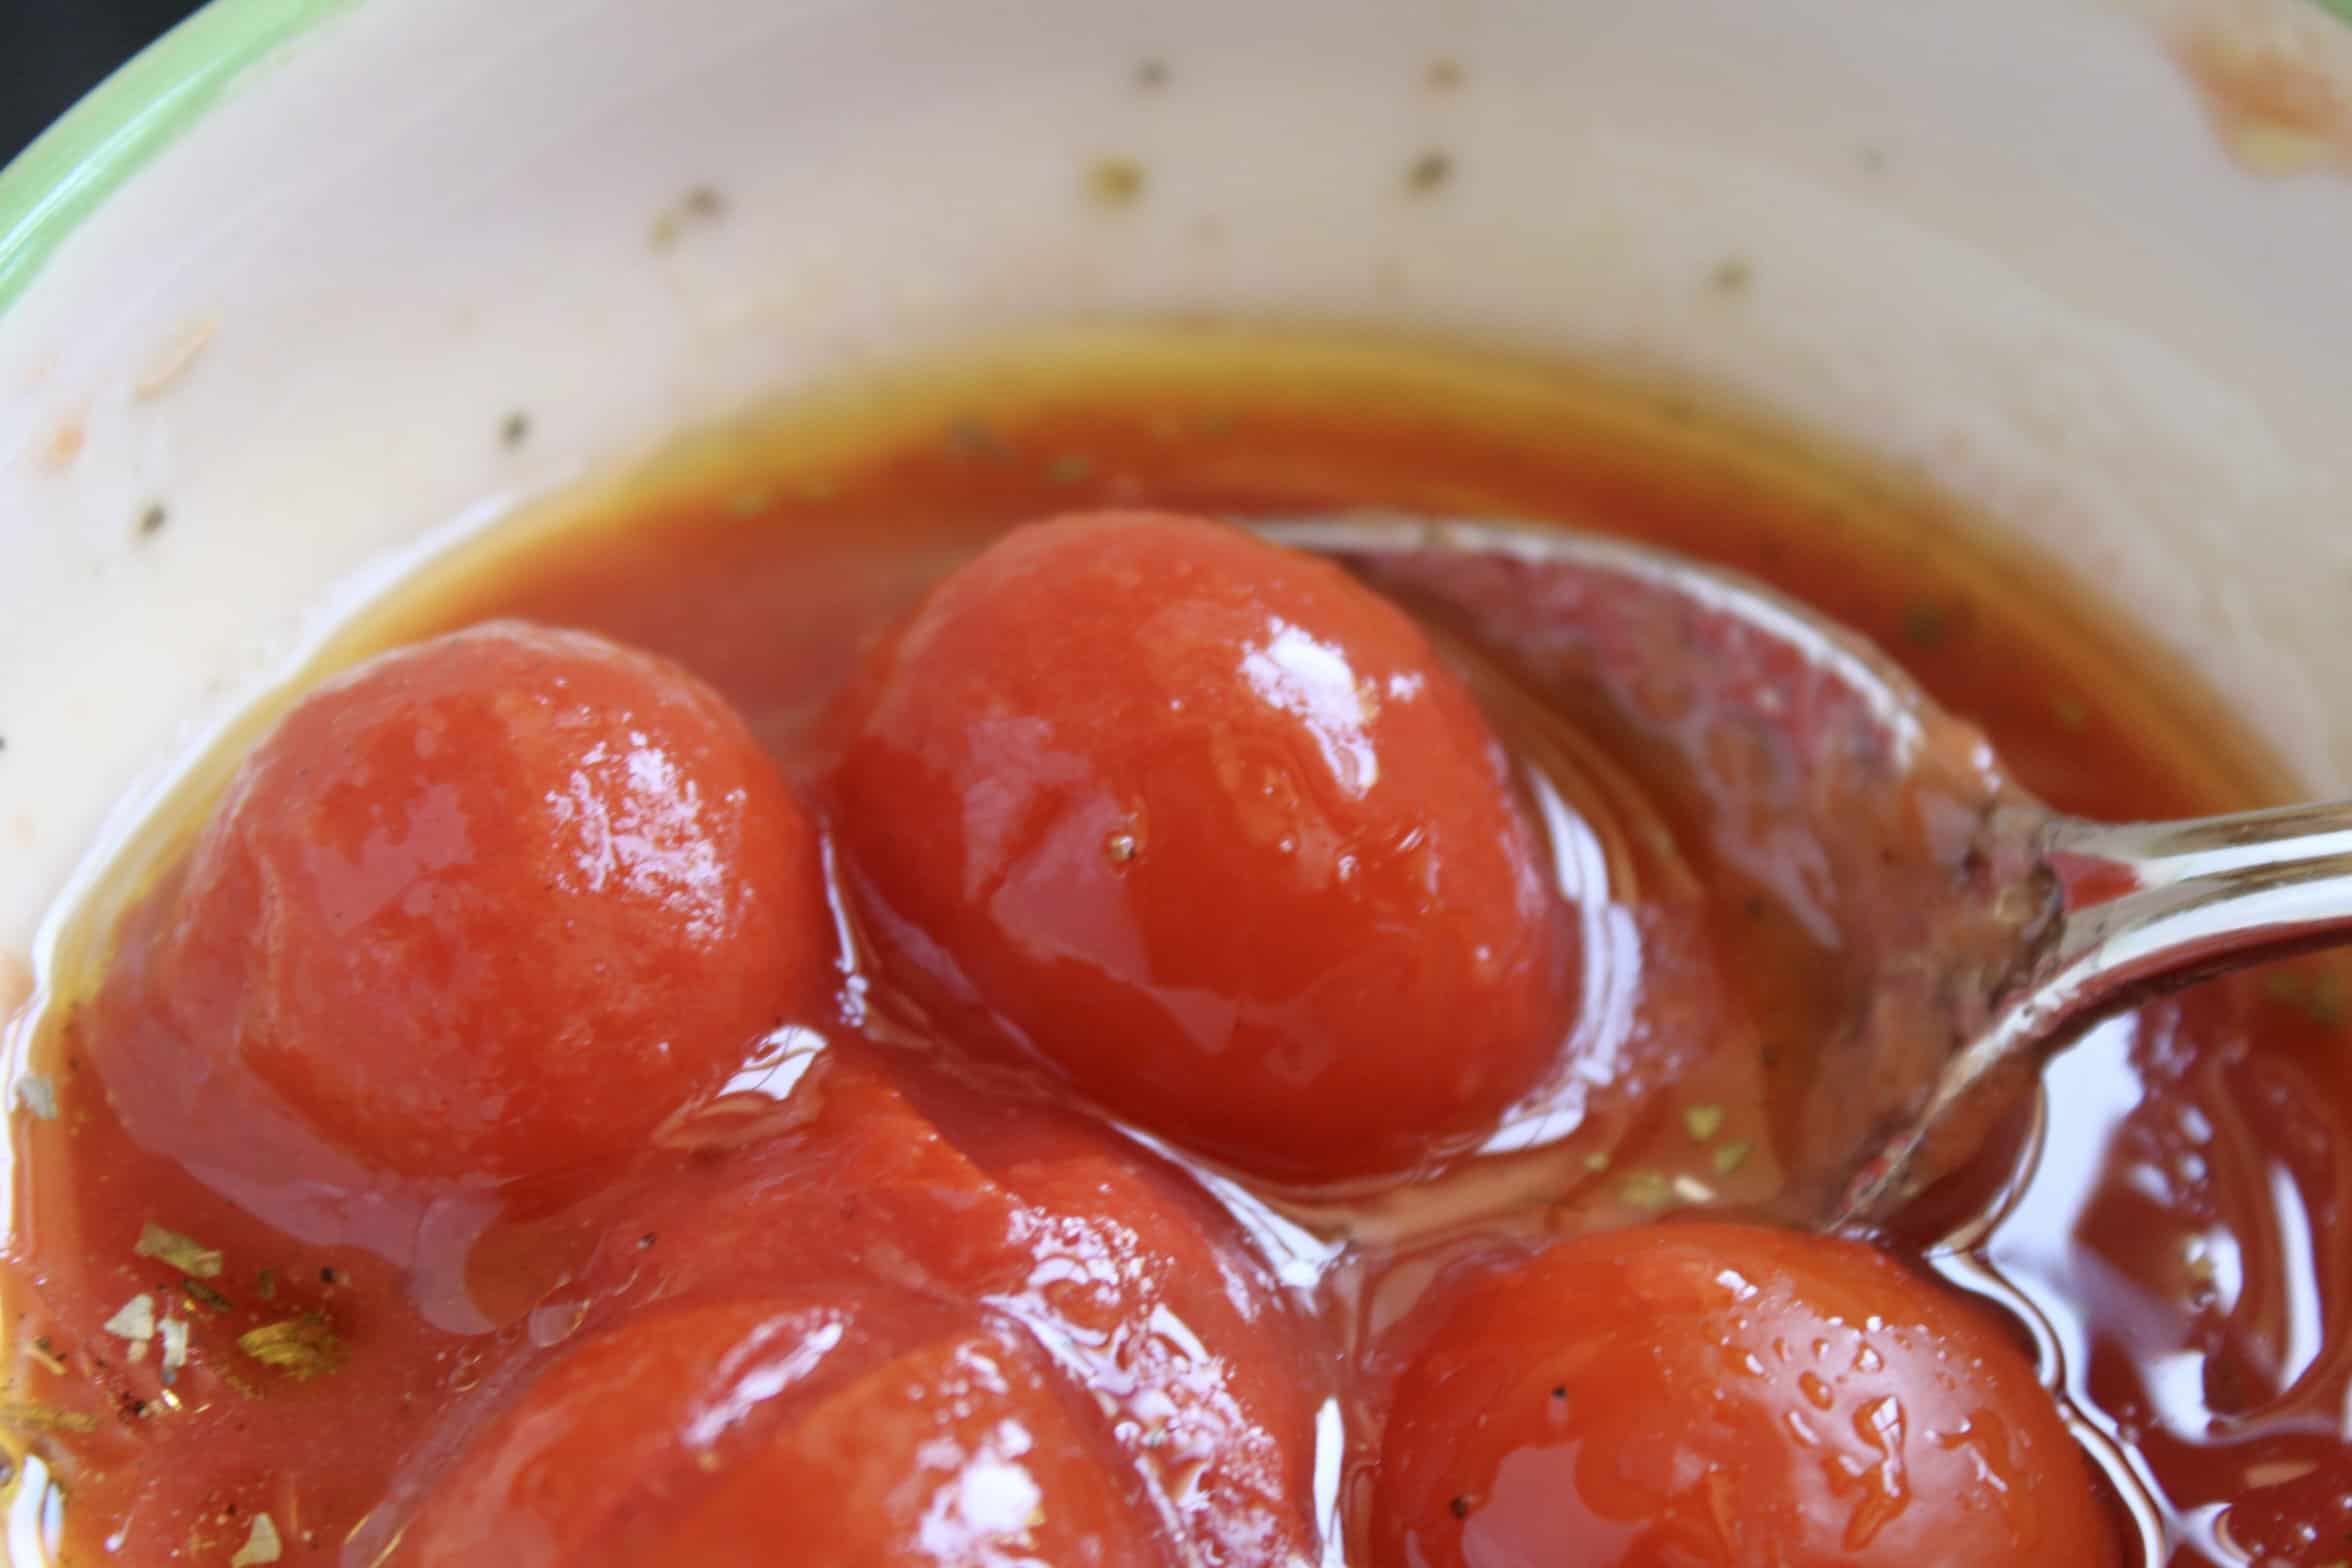 Mutti cherry tomatoes